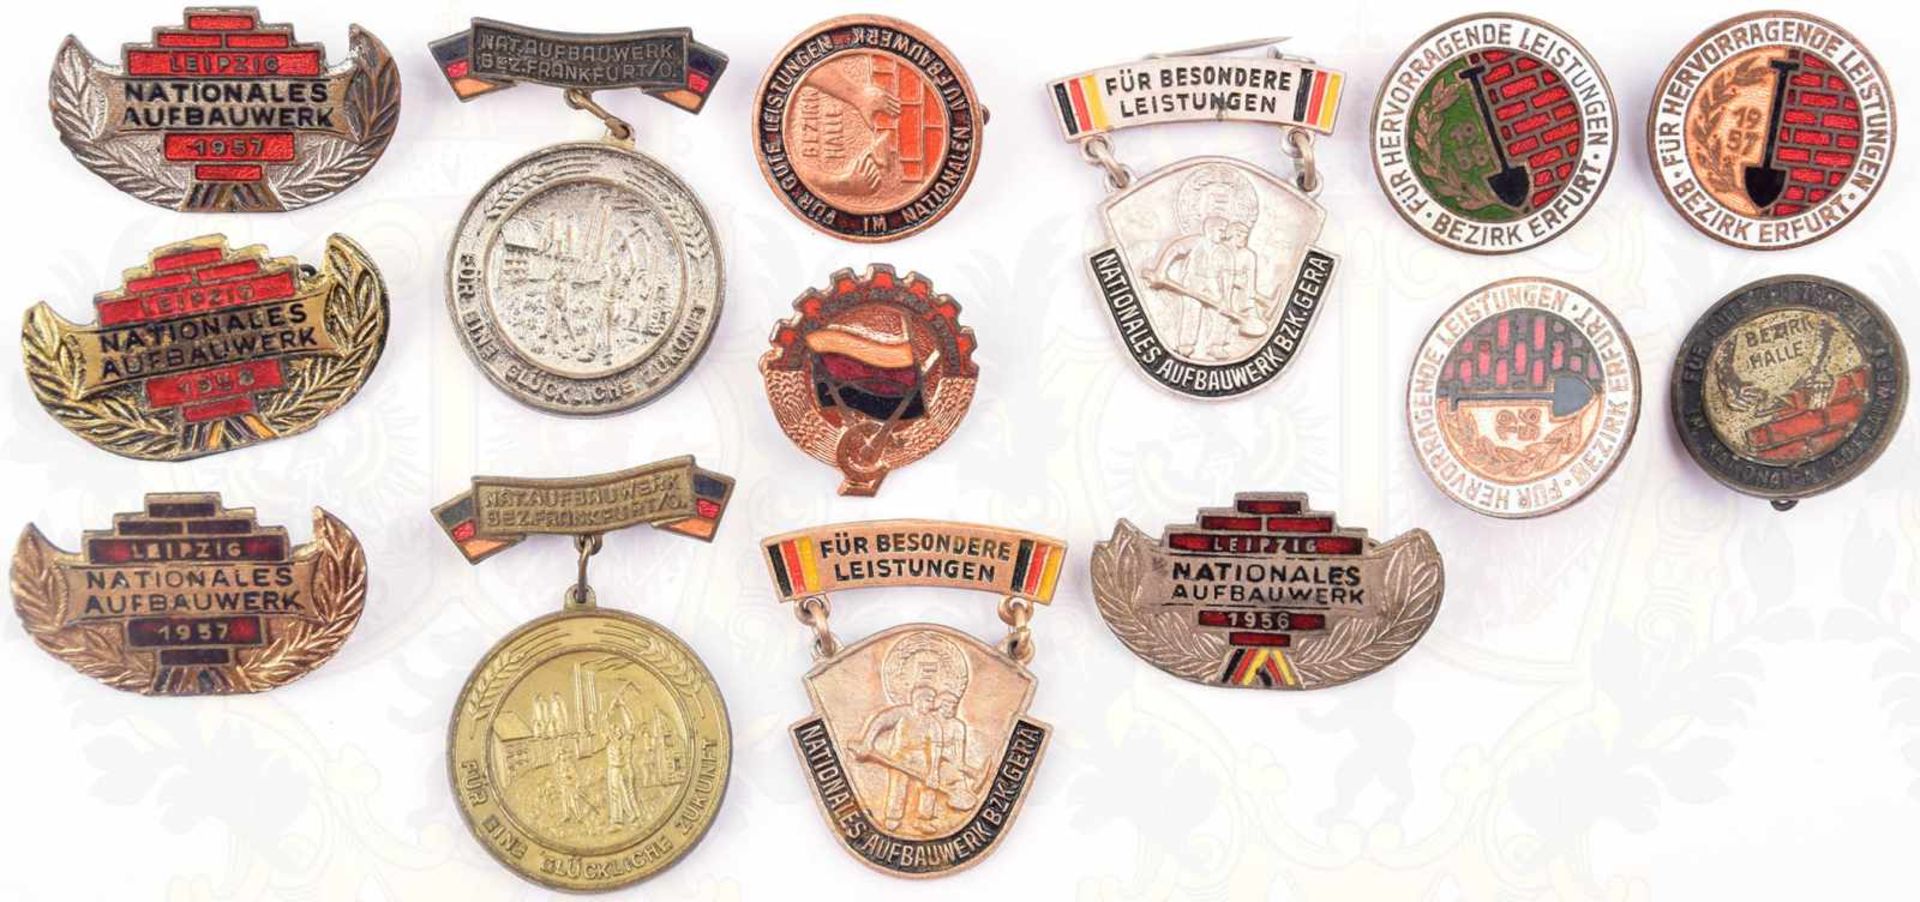 14 ABZEICHEN NATIONALES AUFBAUWERK LEIPZIG, 1956 -1958, Erfurt, Halle, Frankfurt Oder, Gera